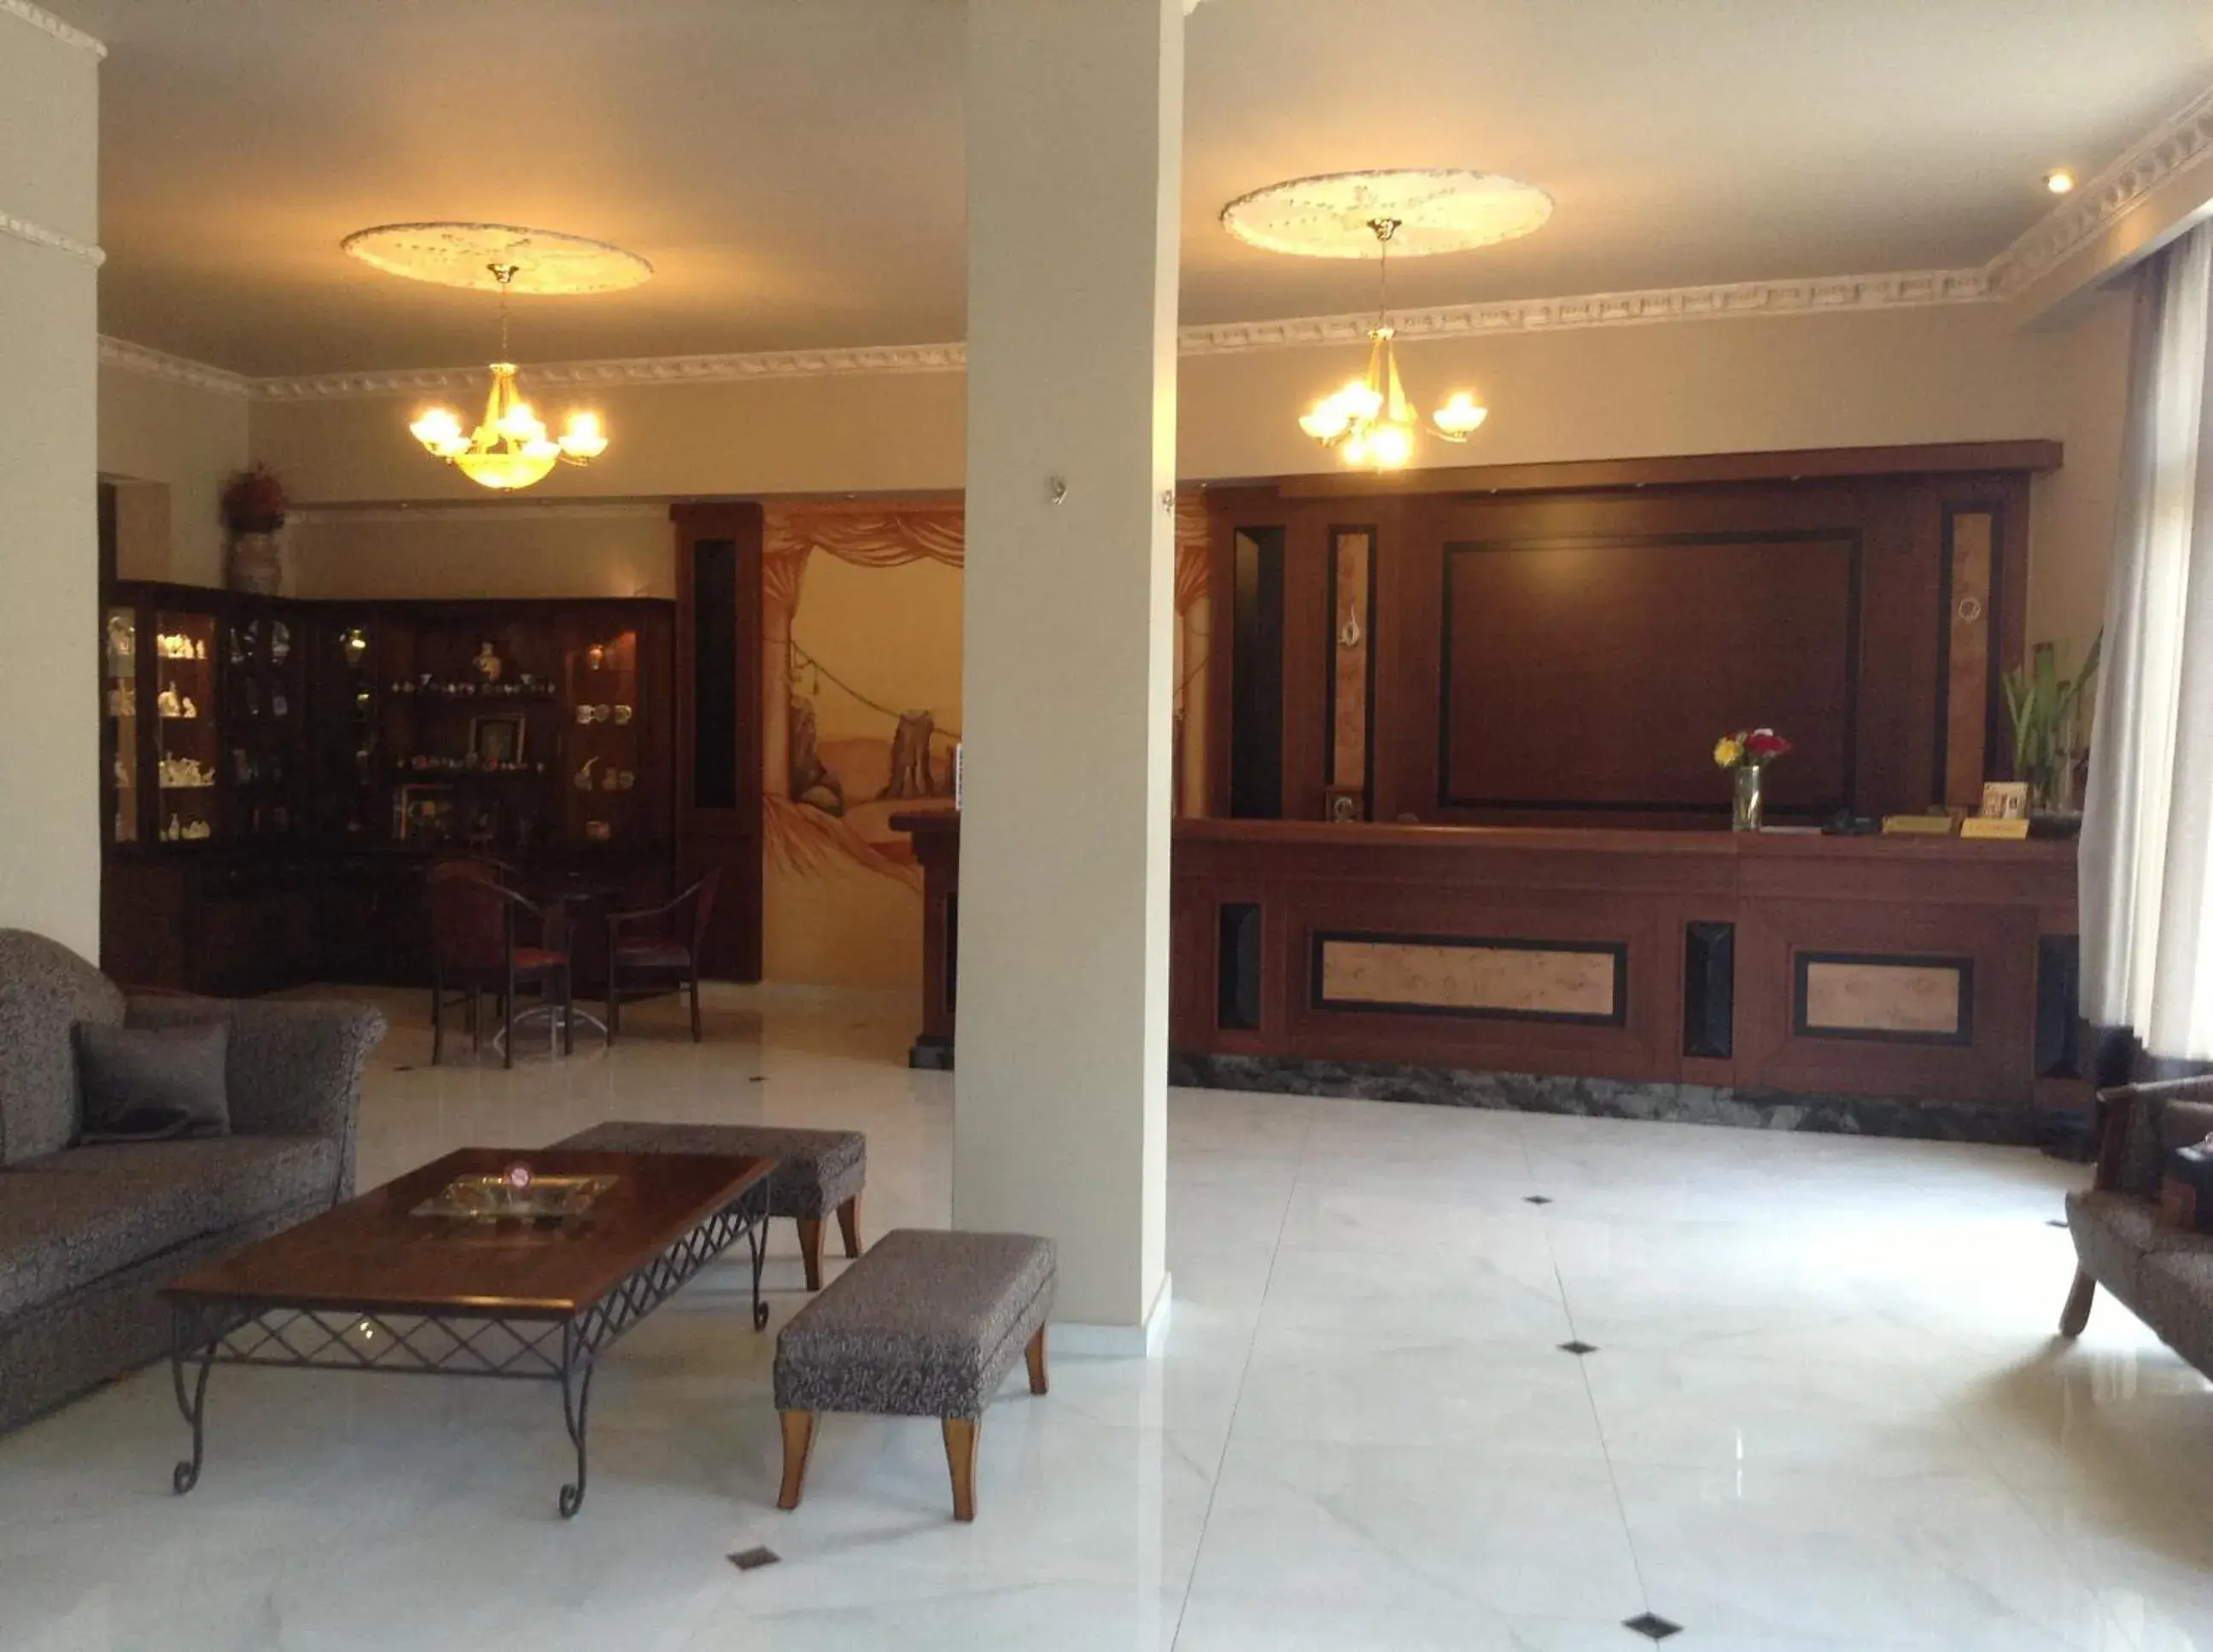 Lobby or reception, Lobby/Reception in Hotel Orfeas